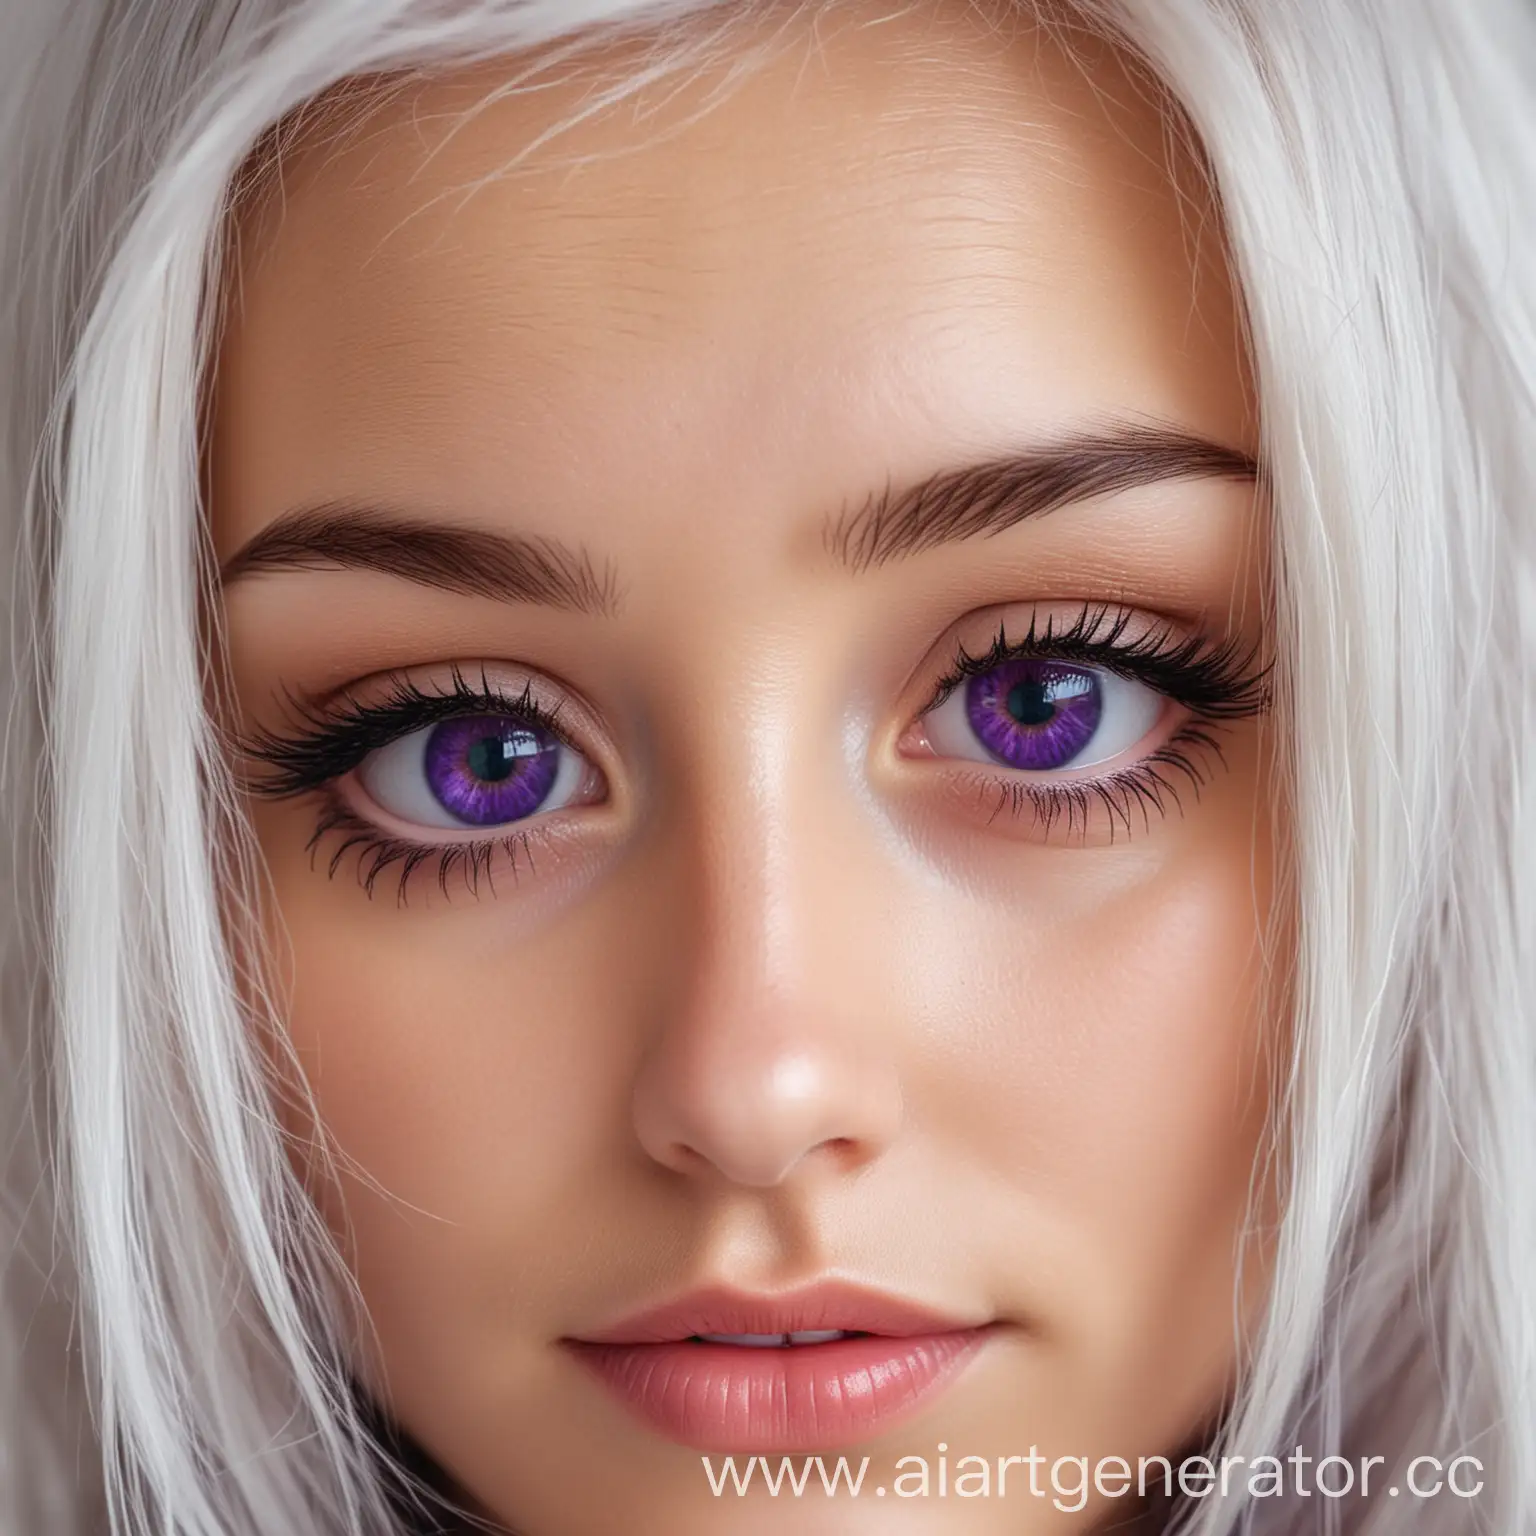 красивый глаз девушки, с белыми волосами ,глаза фиолетового цвета , глаз крупным планом
